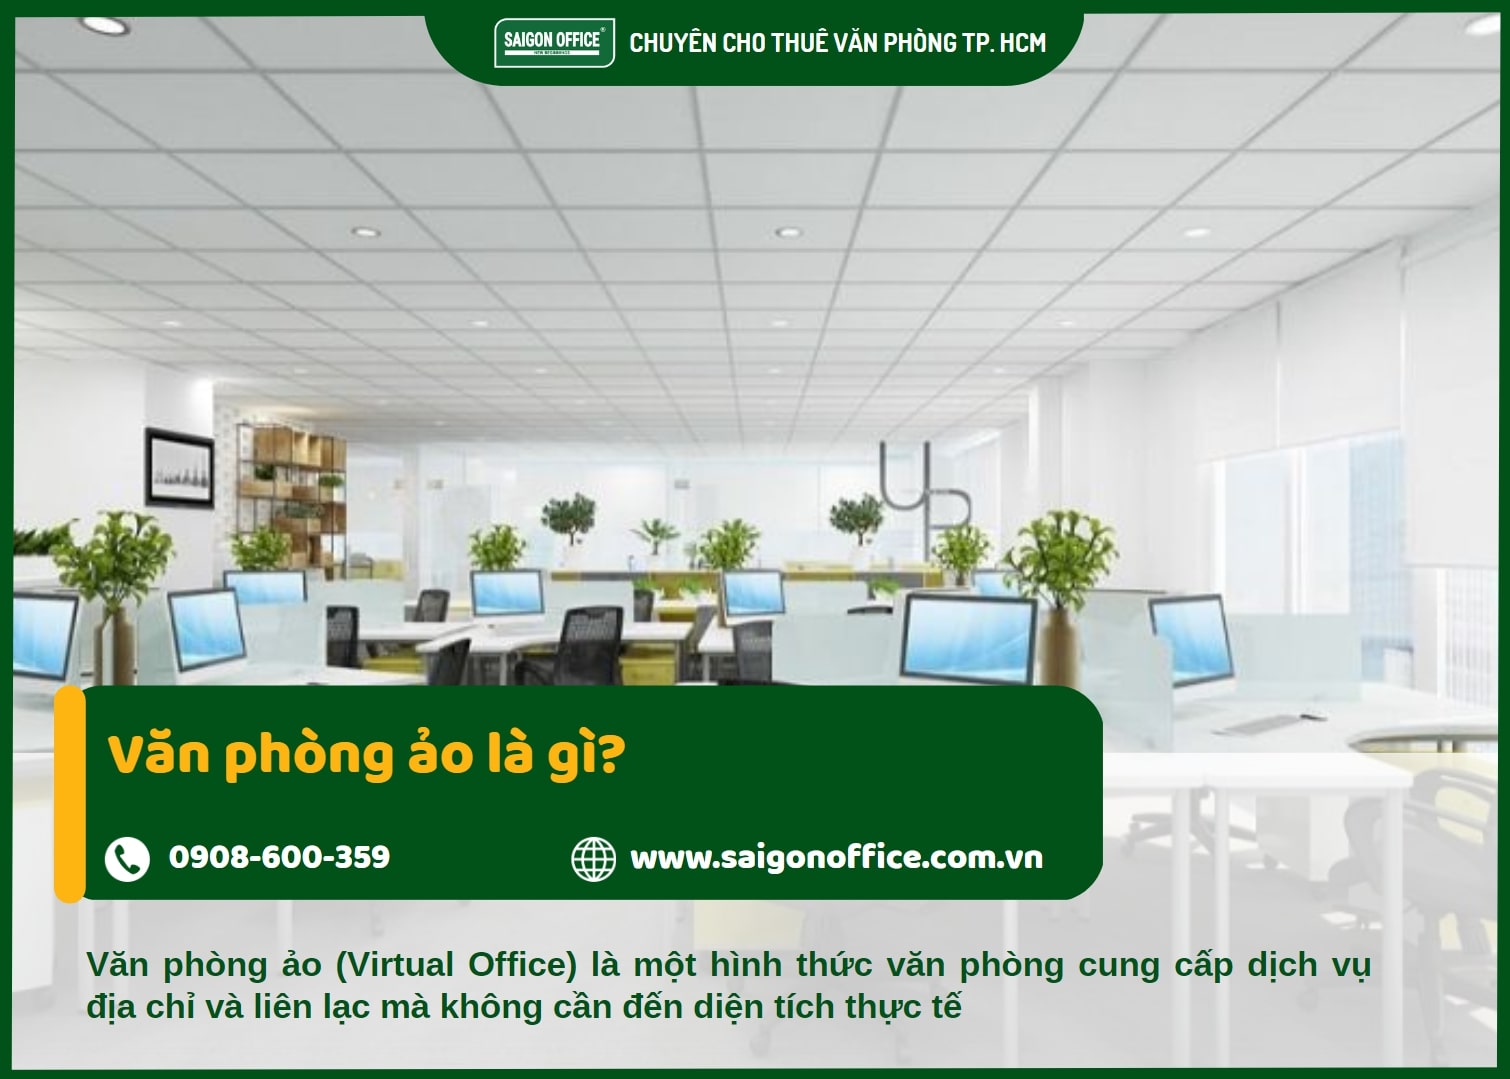 Văn phòng ảo - Virtual Office là gì?